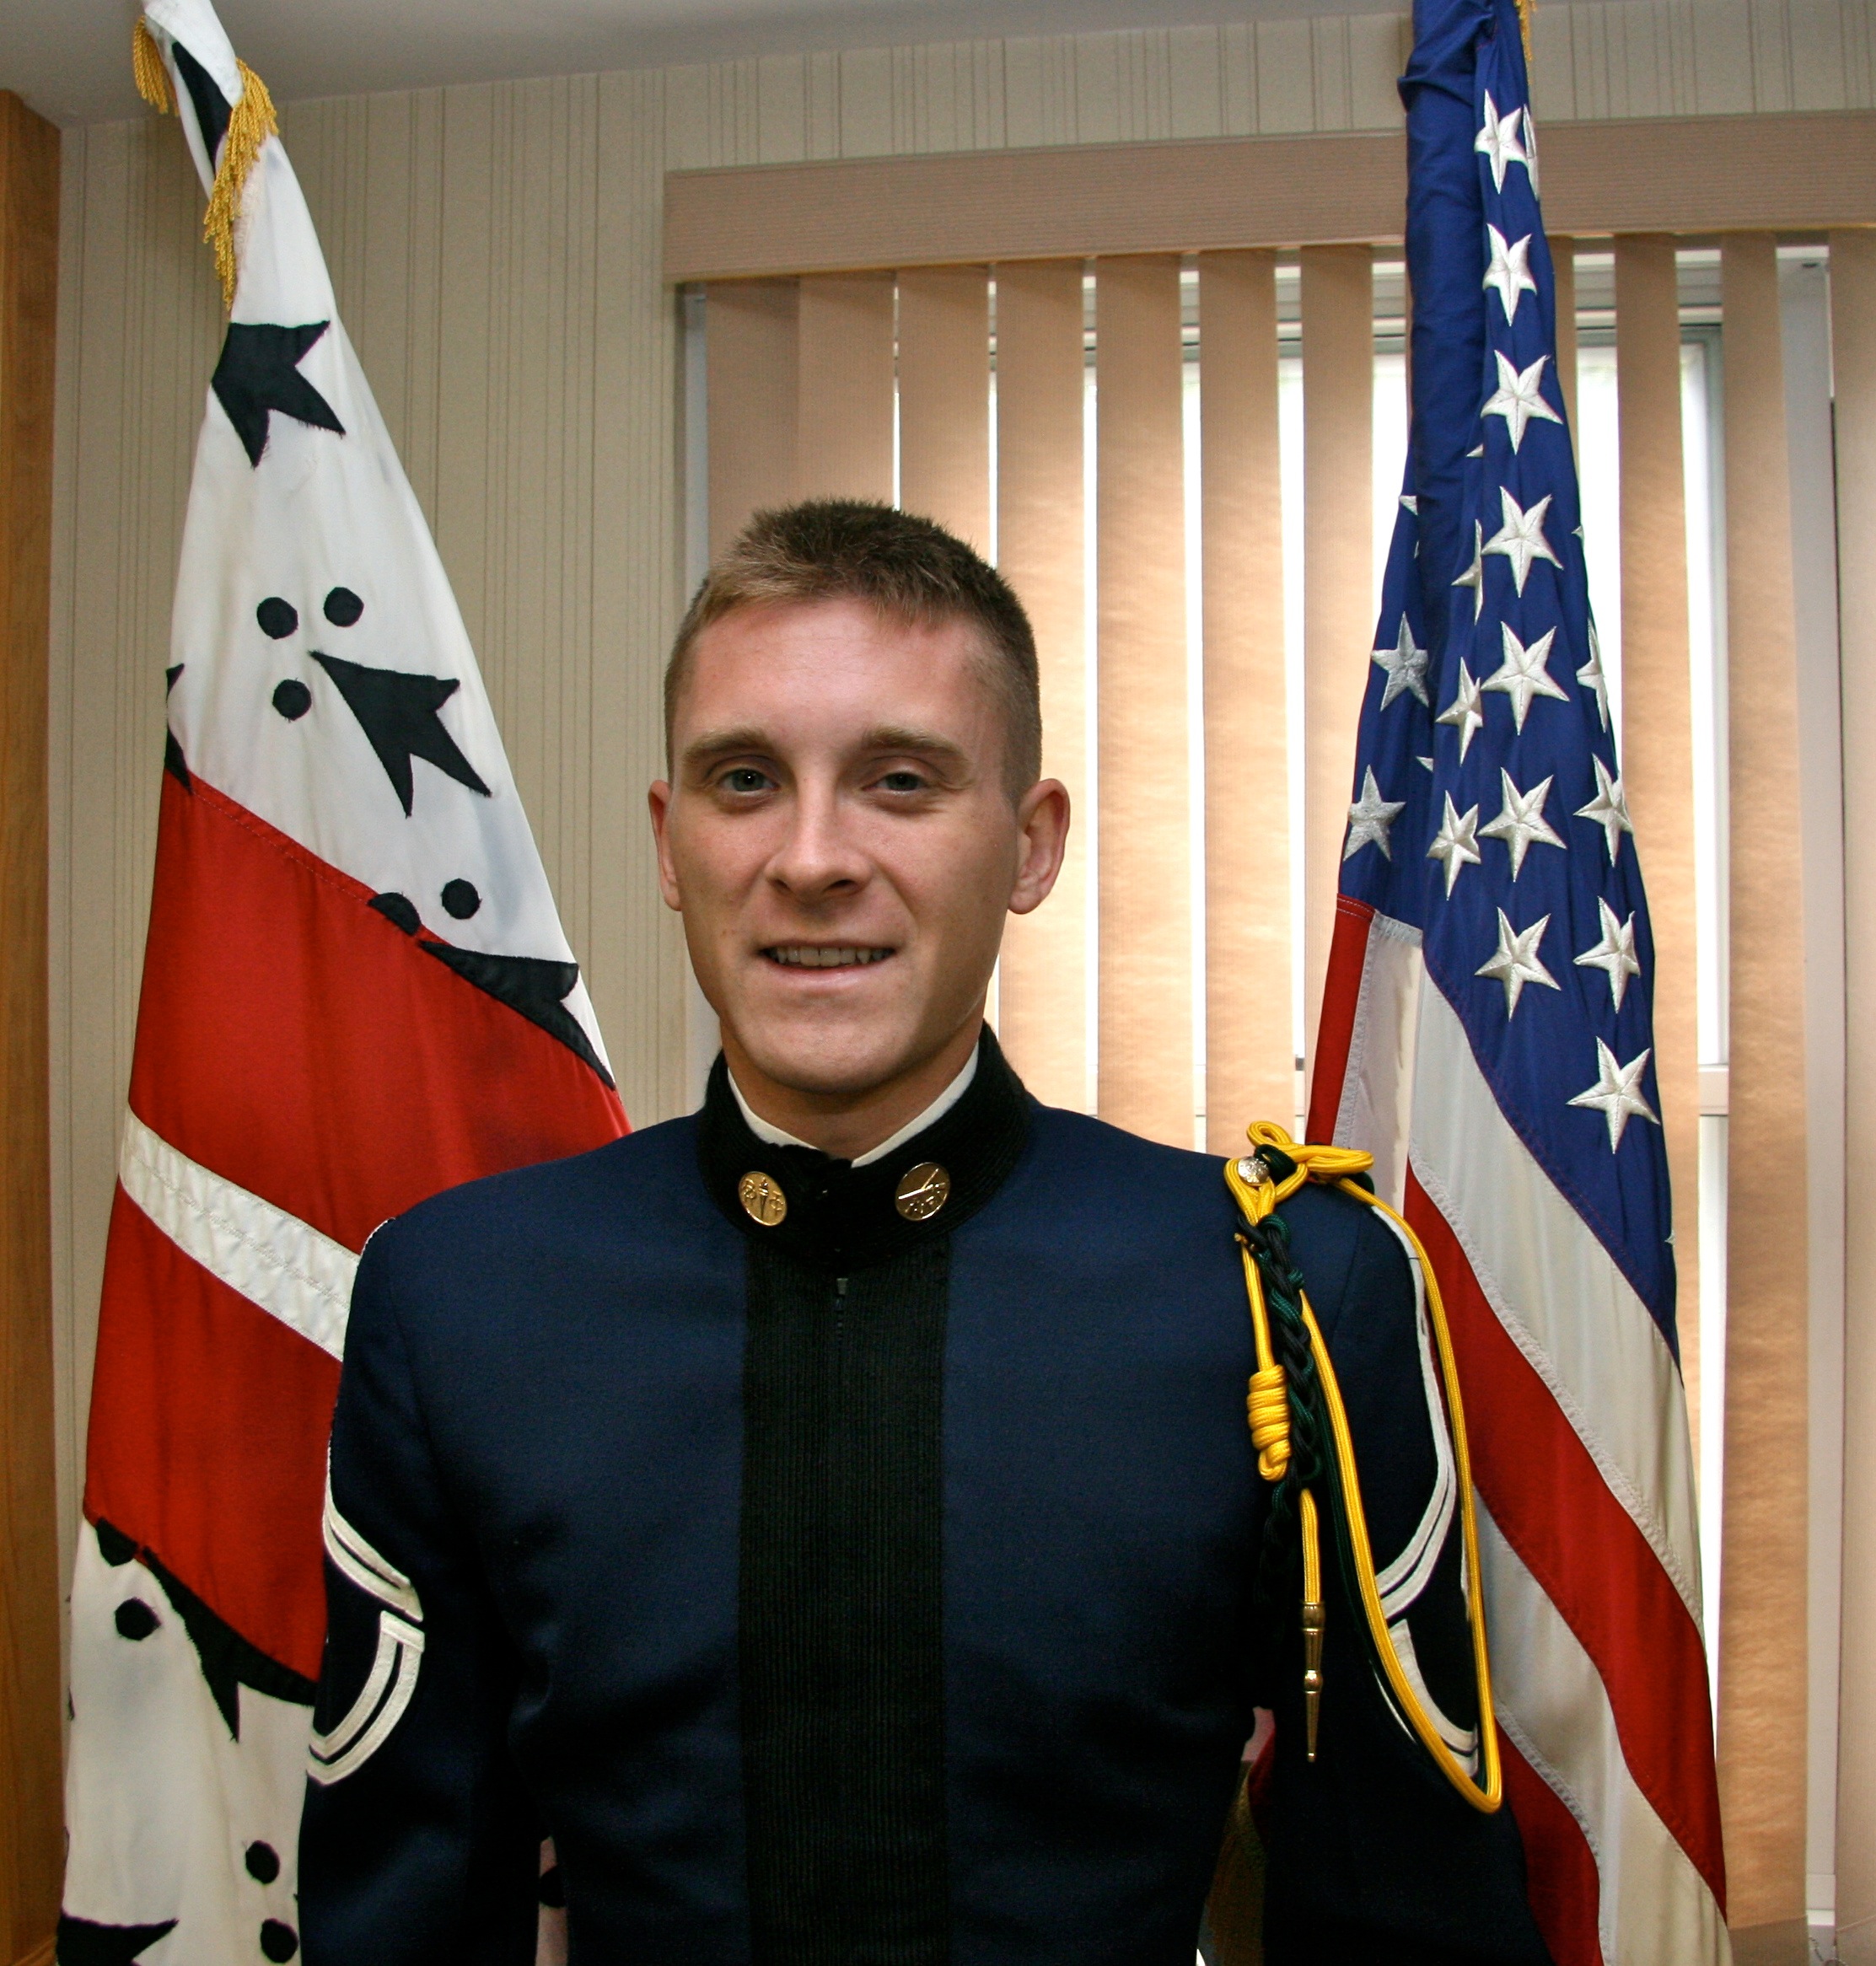 Cadet 1st Sgt. Scott Forsythe